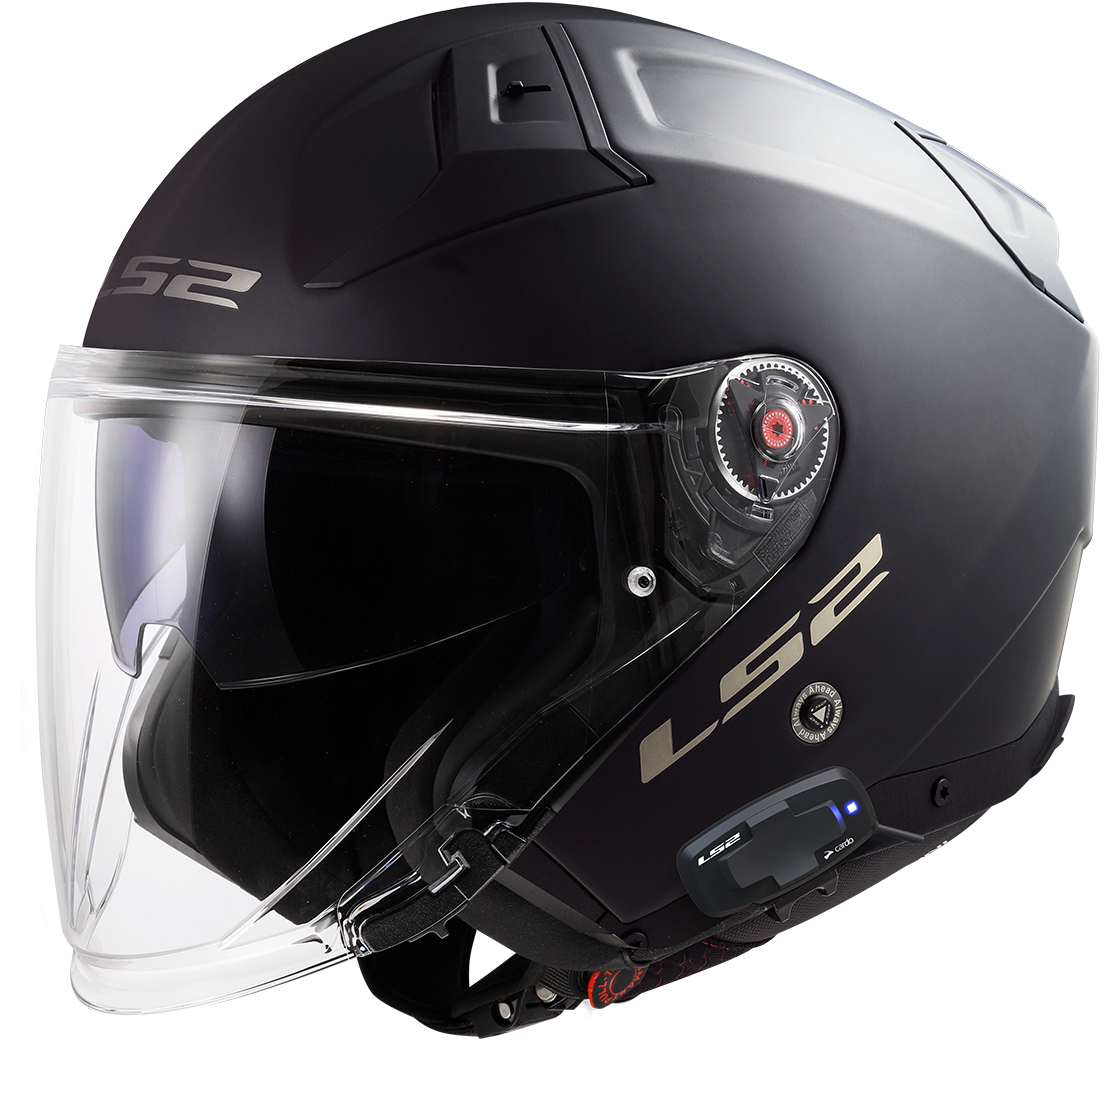 CARDO- Tutorial de instalación de intercomunicador de moto Cardo en un  casco